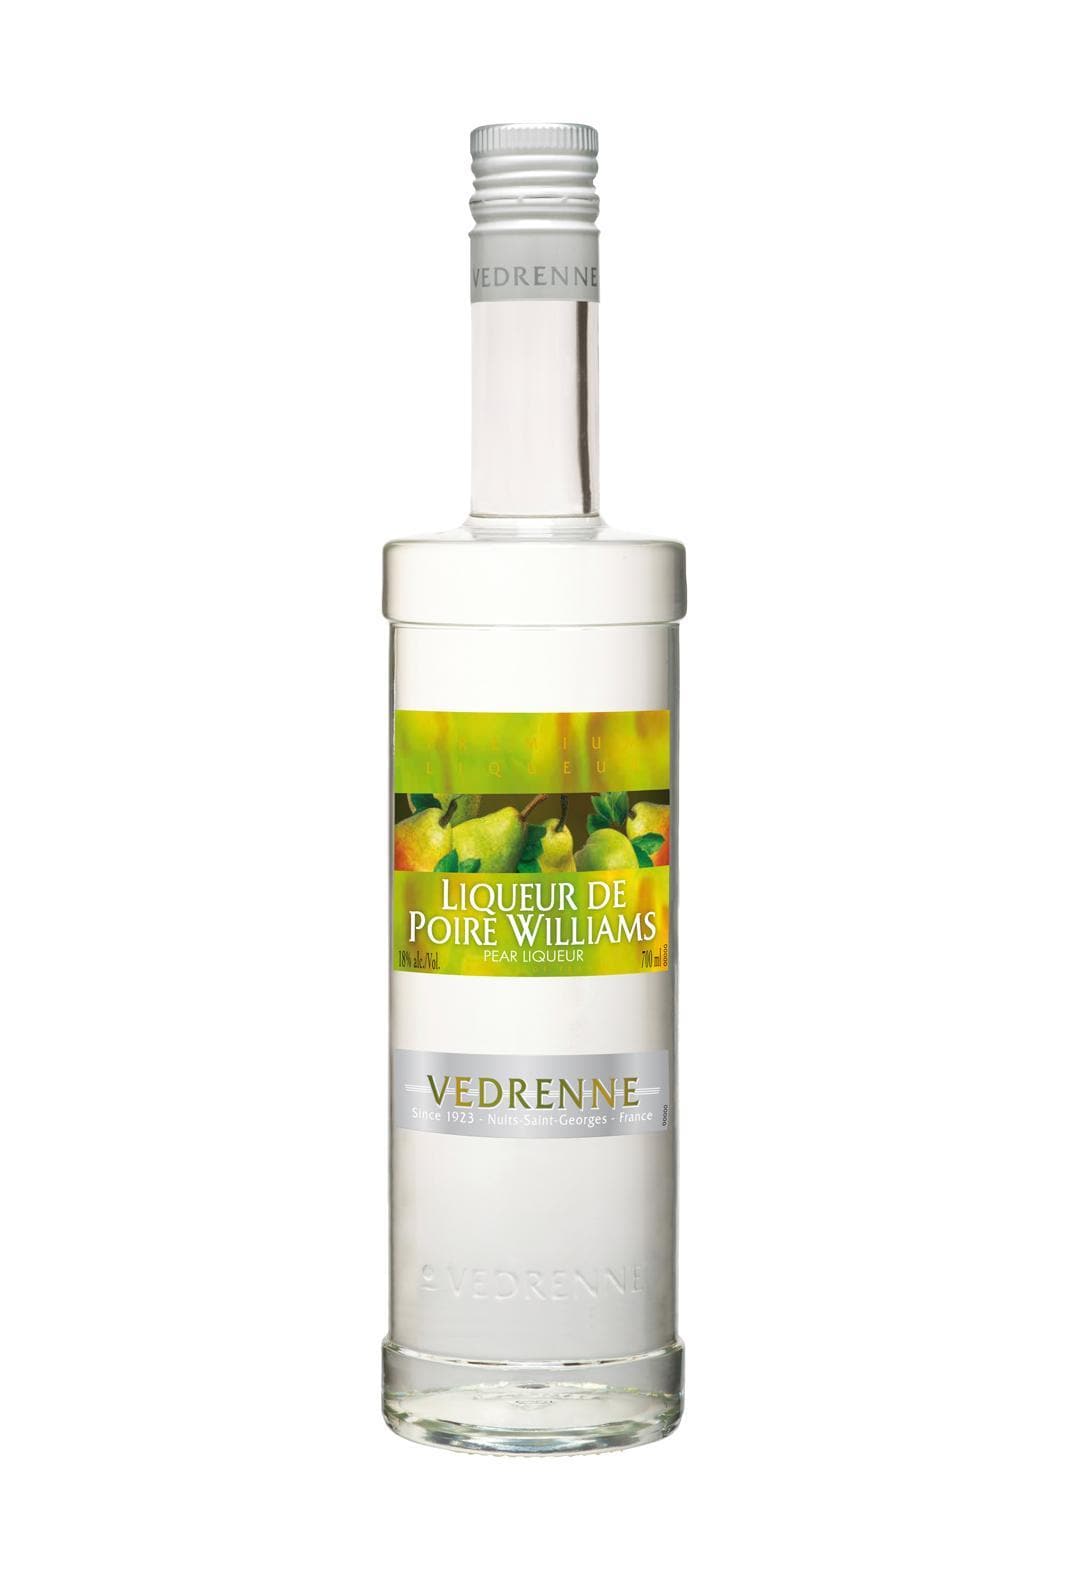 Vedrenne Liqueur de Poire Williams (Williams Pear) 18% 700ml | Liqueurs | Shop online at Spirits of France